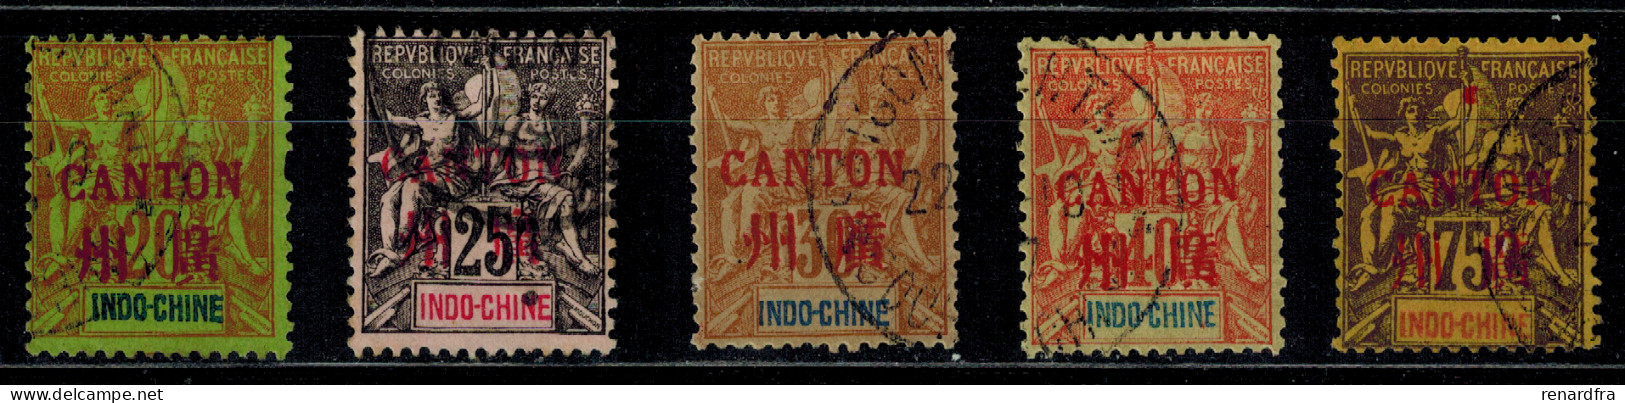 Timbres De Cantons N° 9, 10, 11,12 Et 14 Oblitérés - Used Stamps